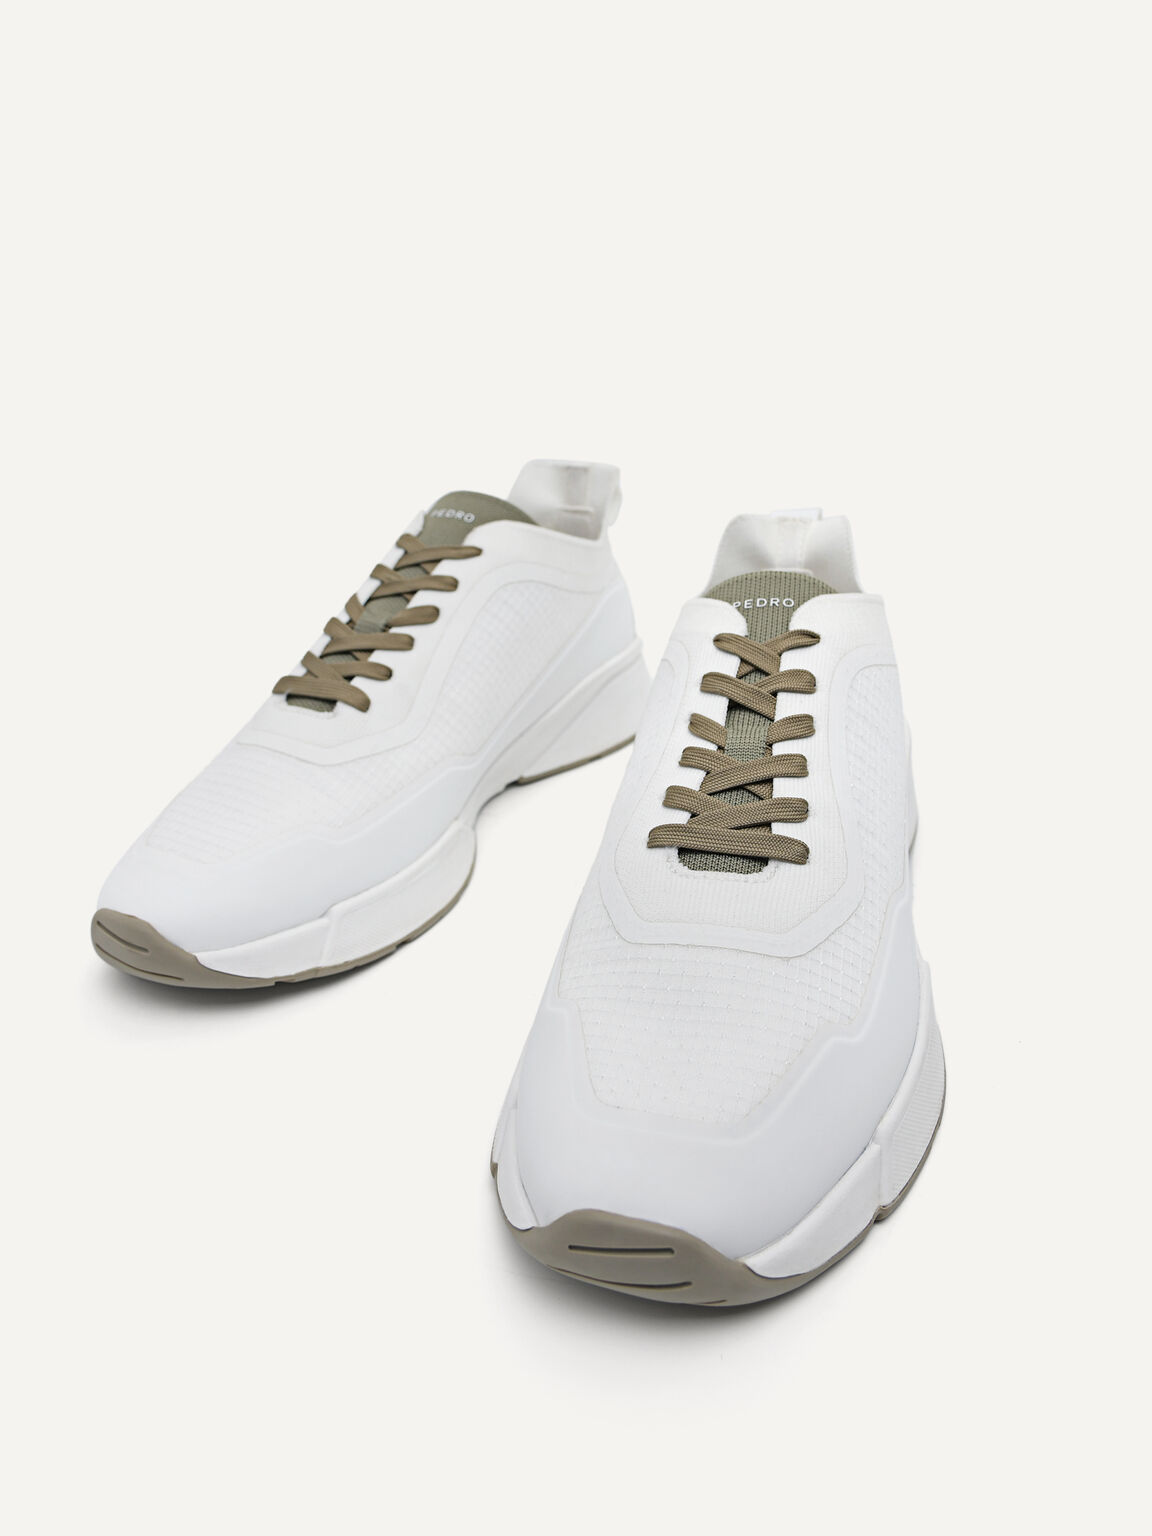 針織厚底運動鞋, 白色, hi-res